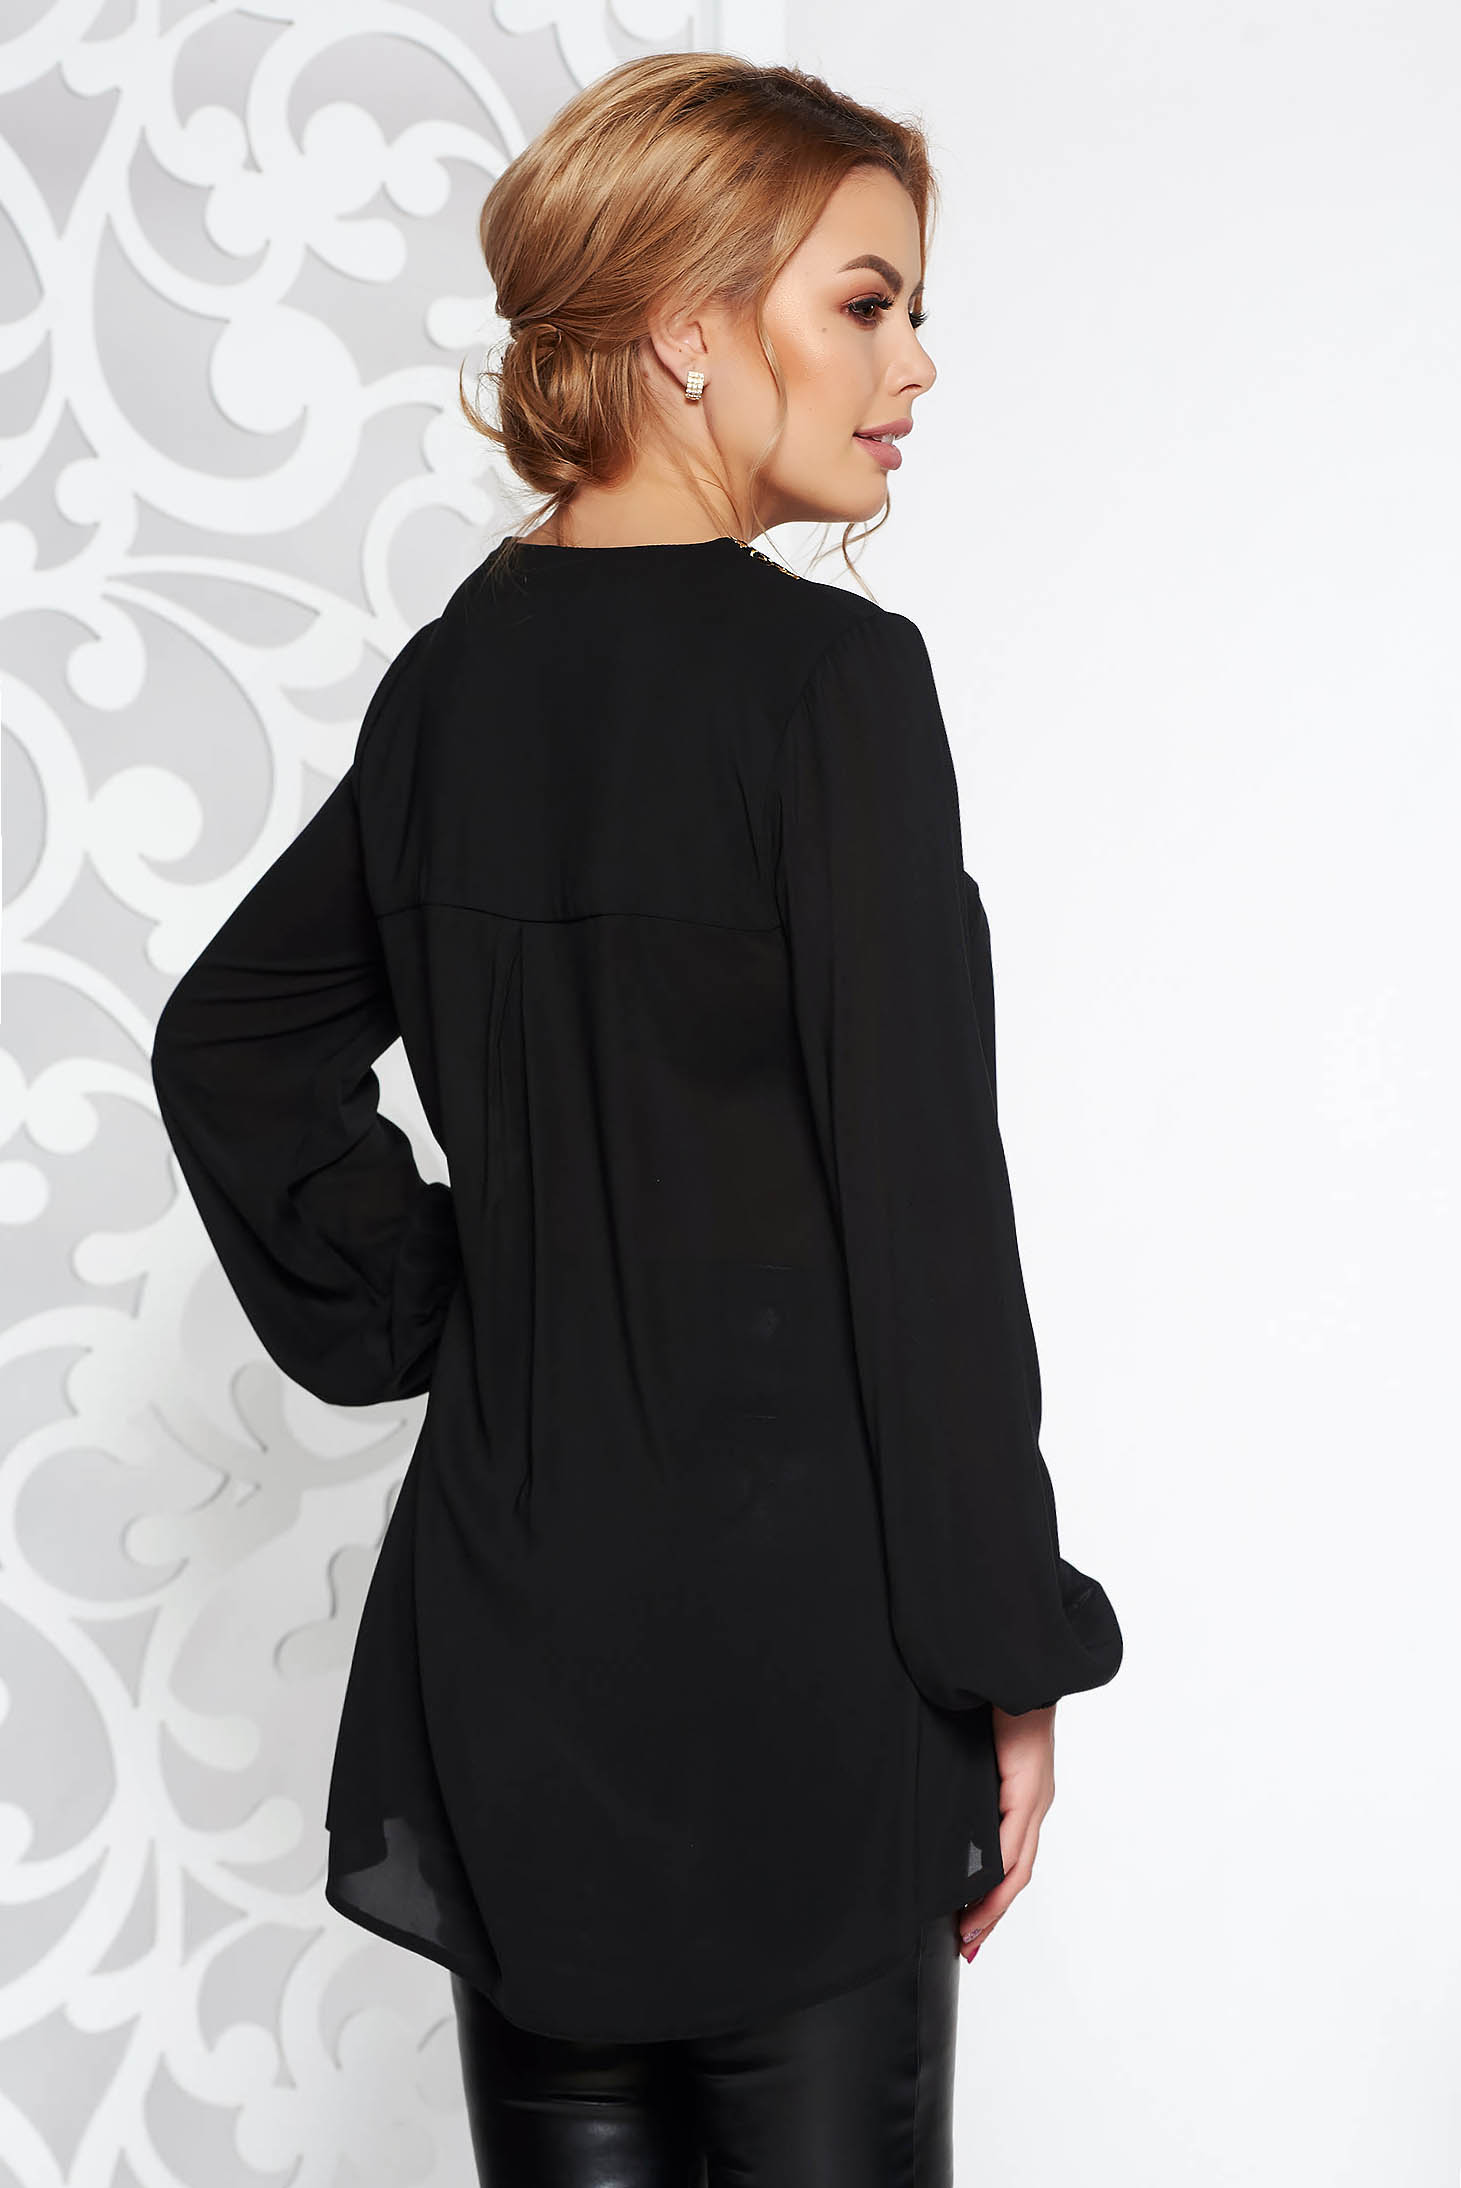 Bluza dama StarShinerS neagra eleganta cu croi larg asimetrica din voal cu guler rotunjit cu insertii de broderie 2 - StarShinerS.ro